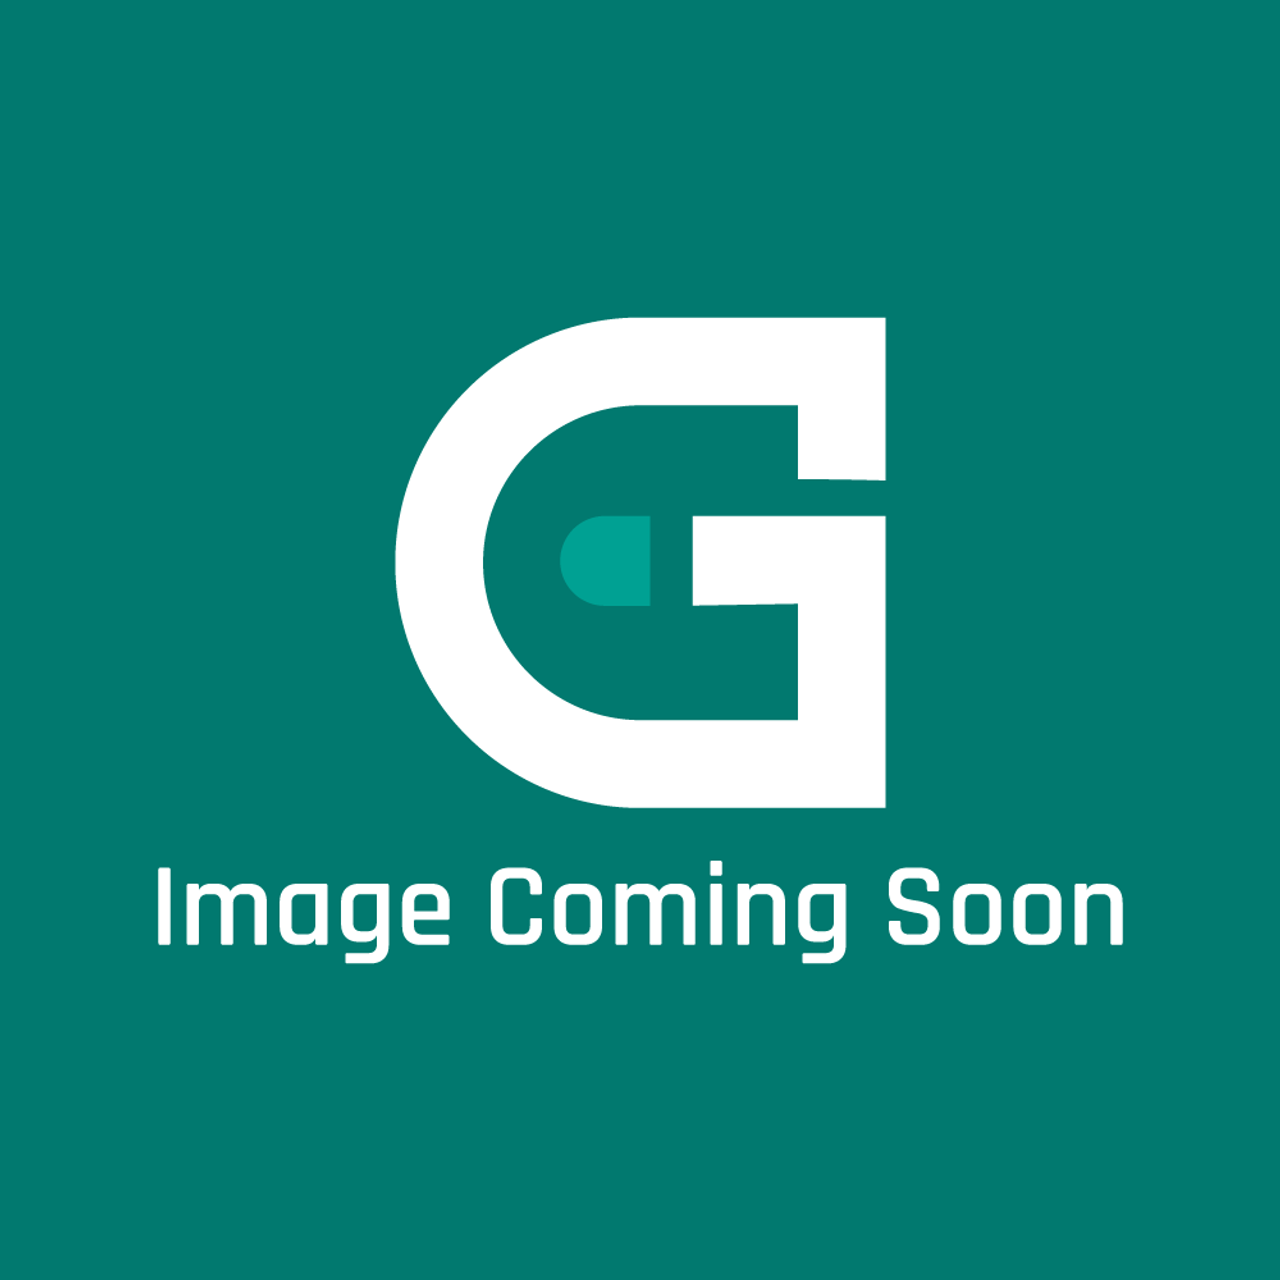 GE Appliances WD21X20125 - HARNESS ASM DOOR - Image Coming Soon!